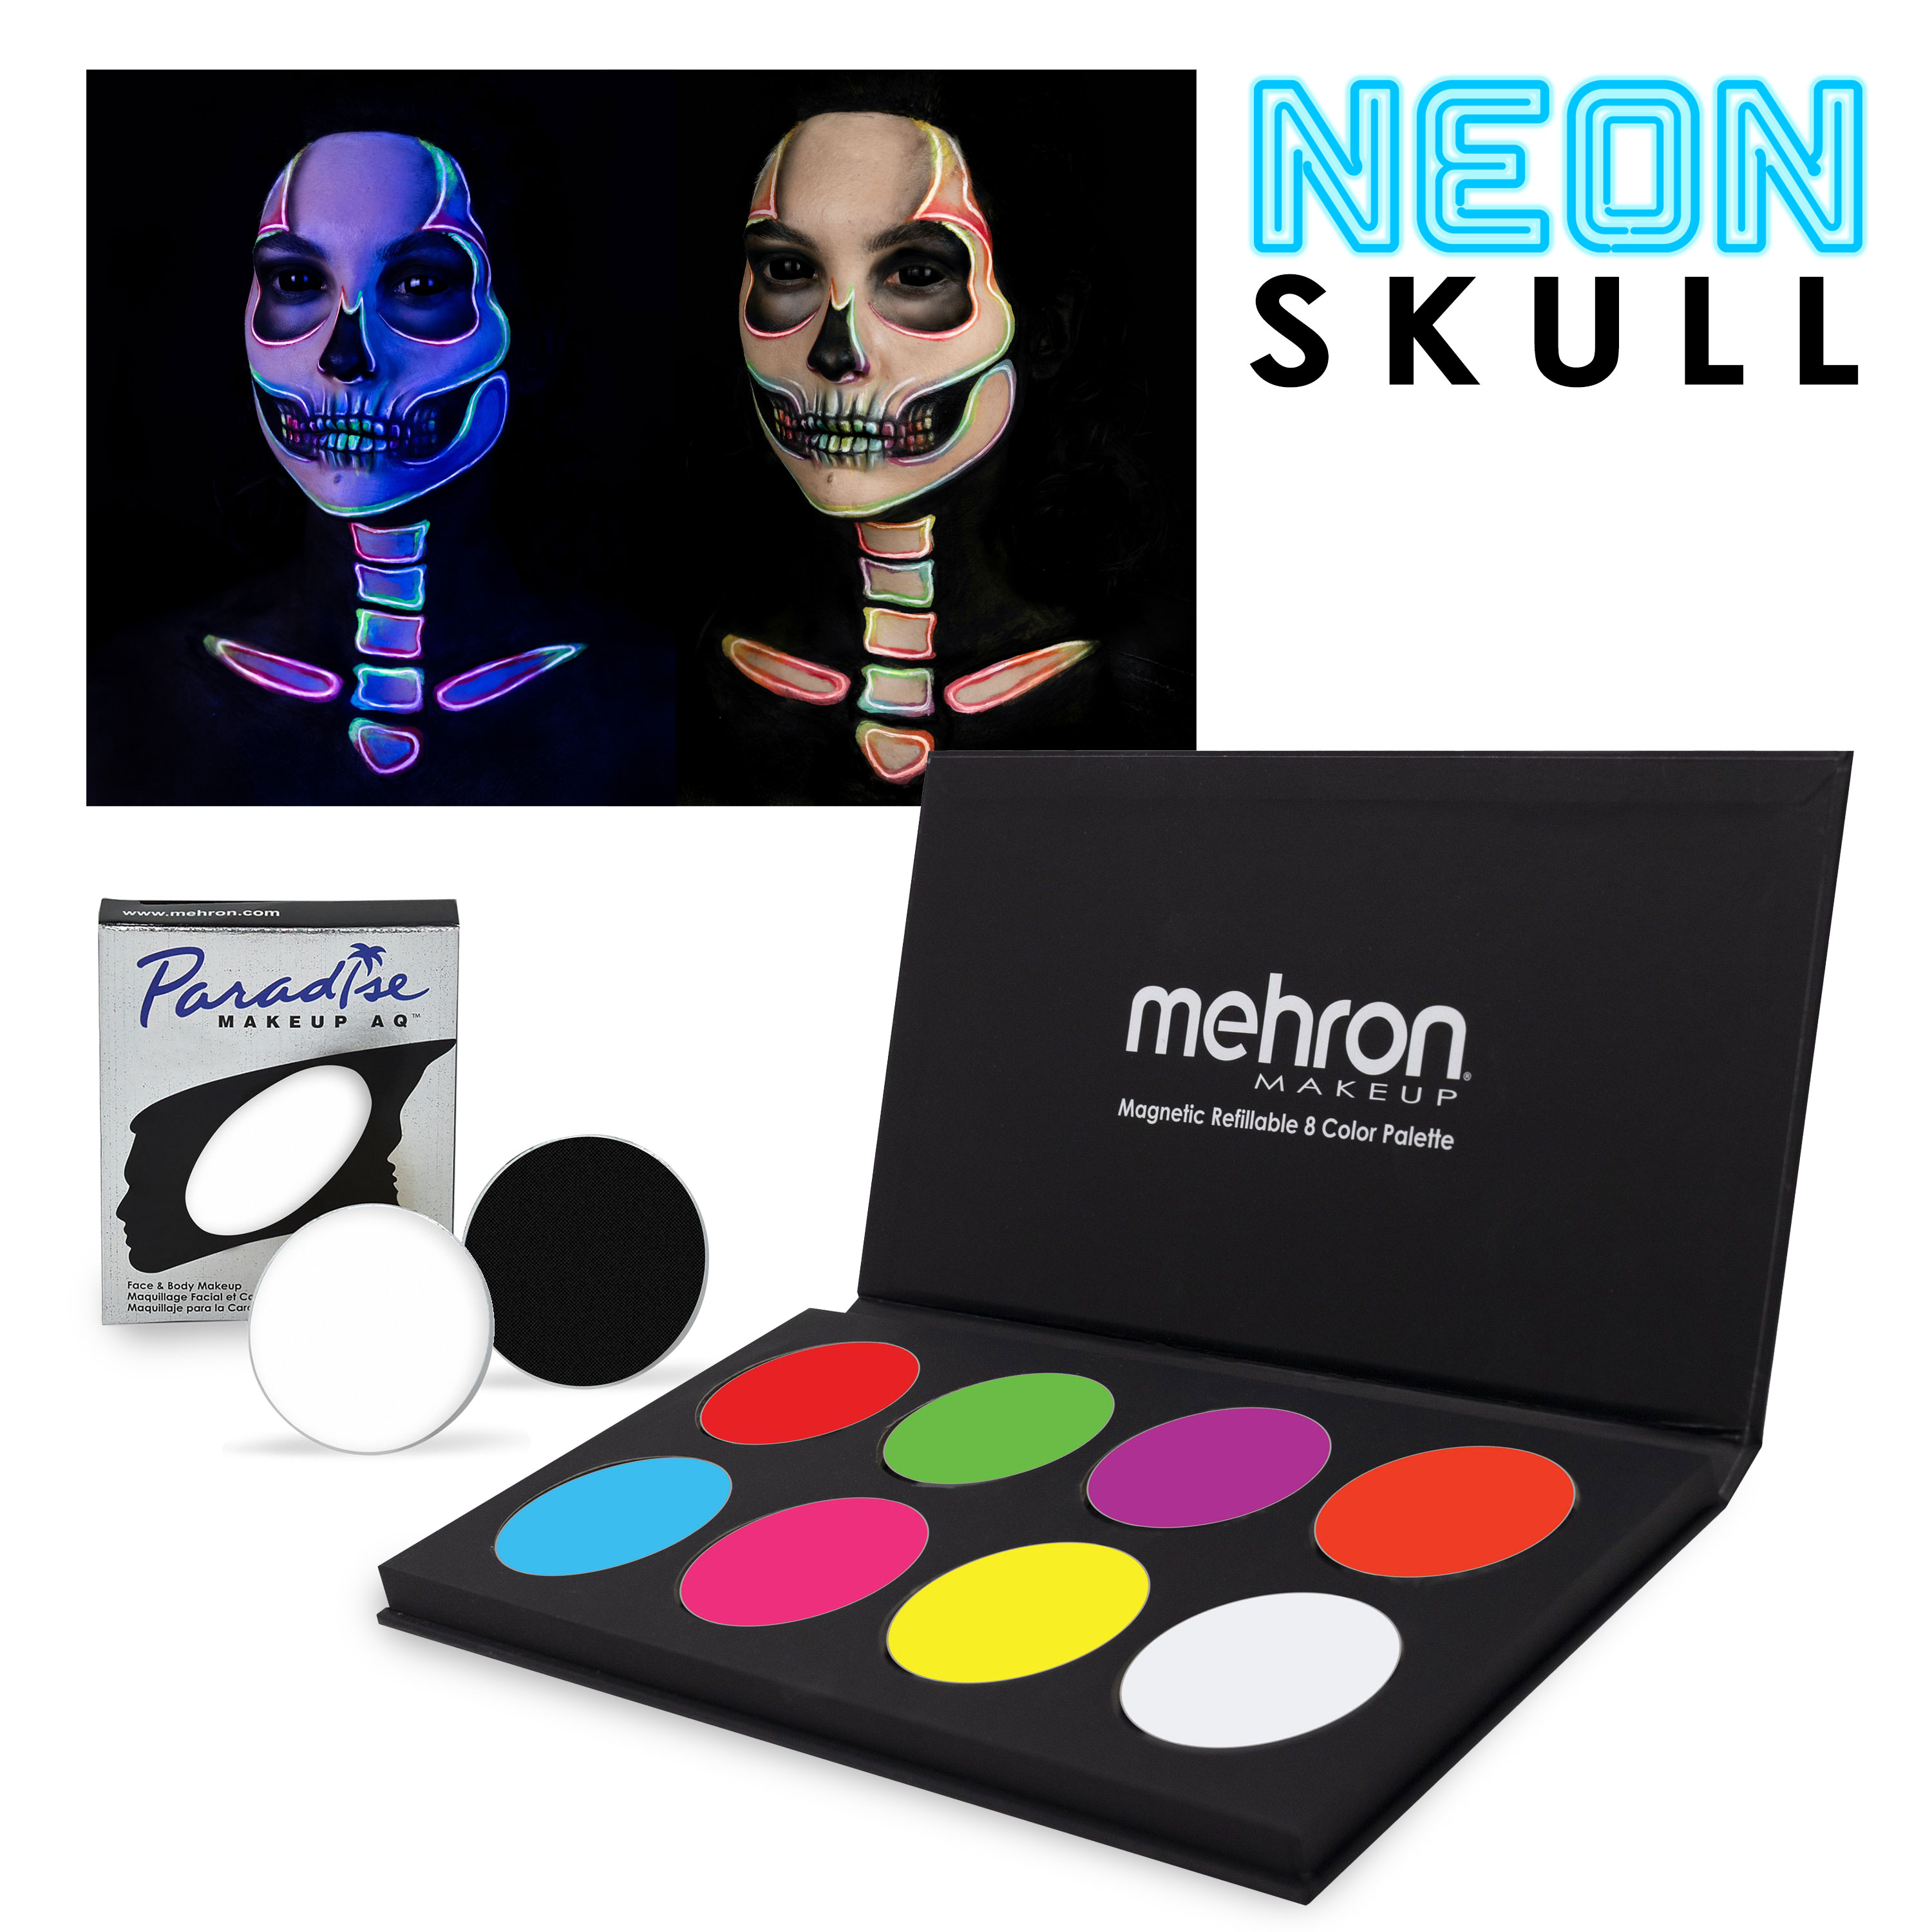 Neon Skull makeup